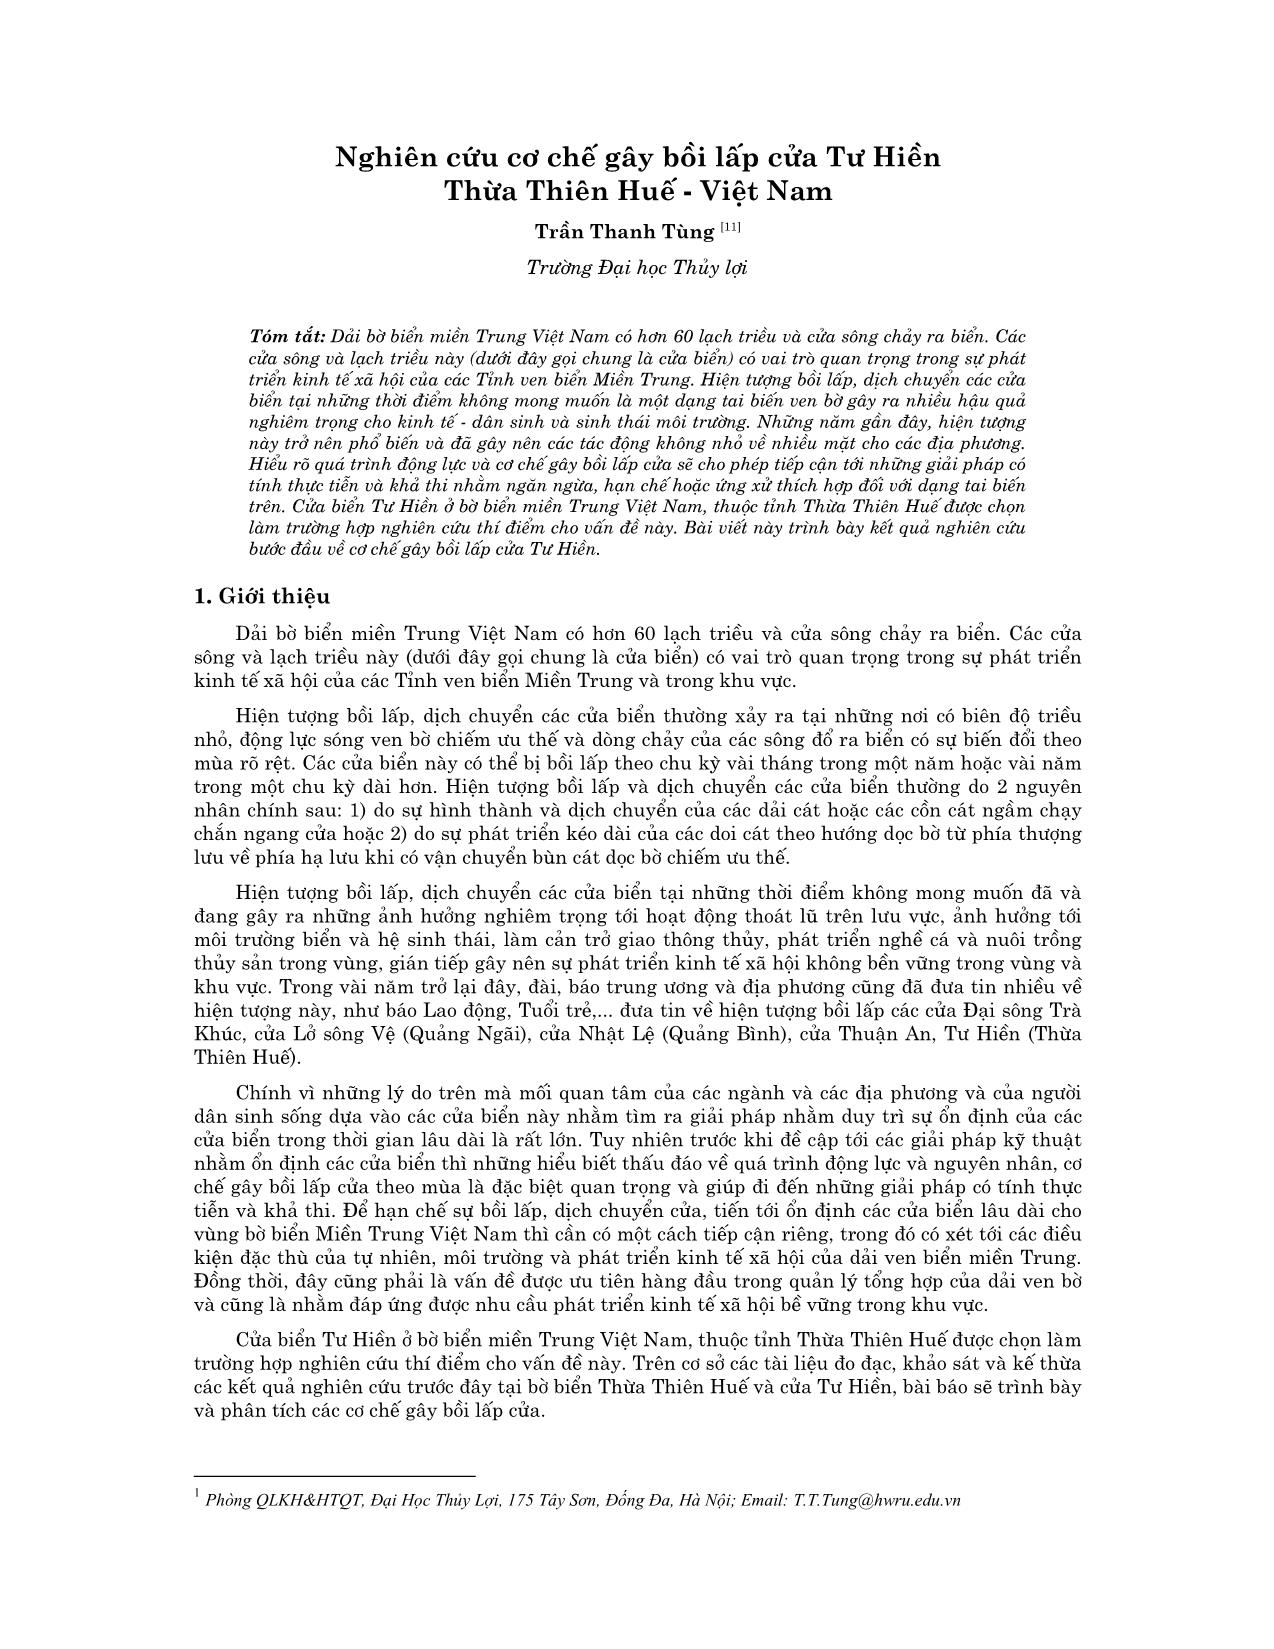 Nghiên cứu cơ chế gây bồi lấp cửa Tư Hiền Thừa Thiên Huế - Việt Nam trang 1